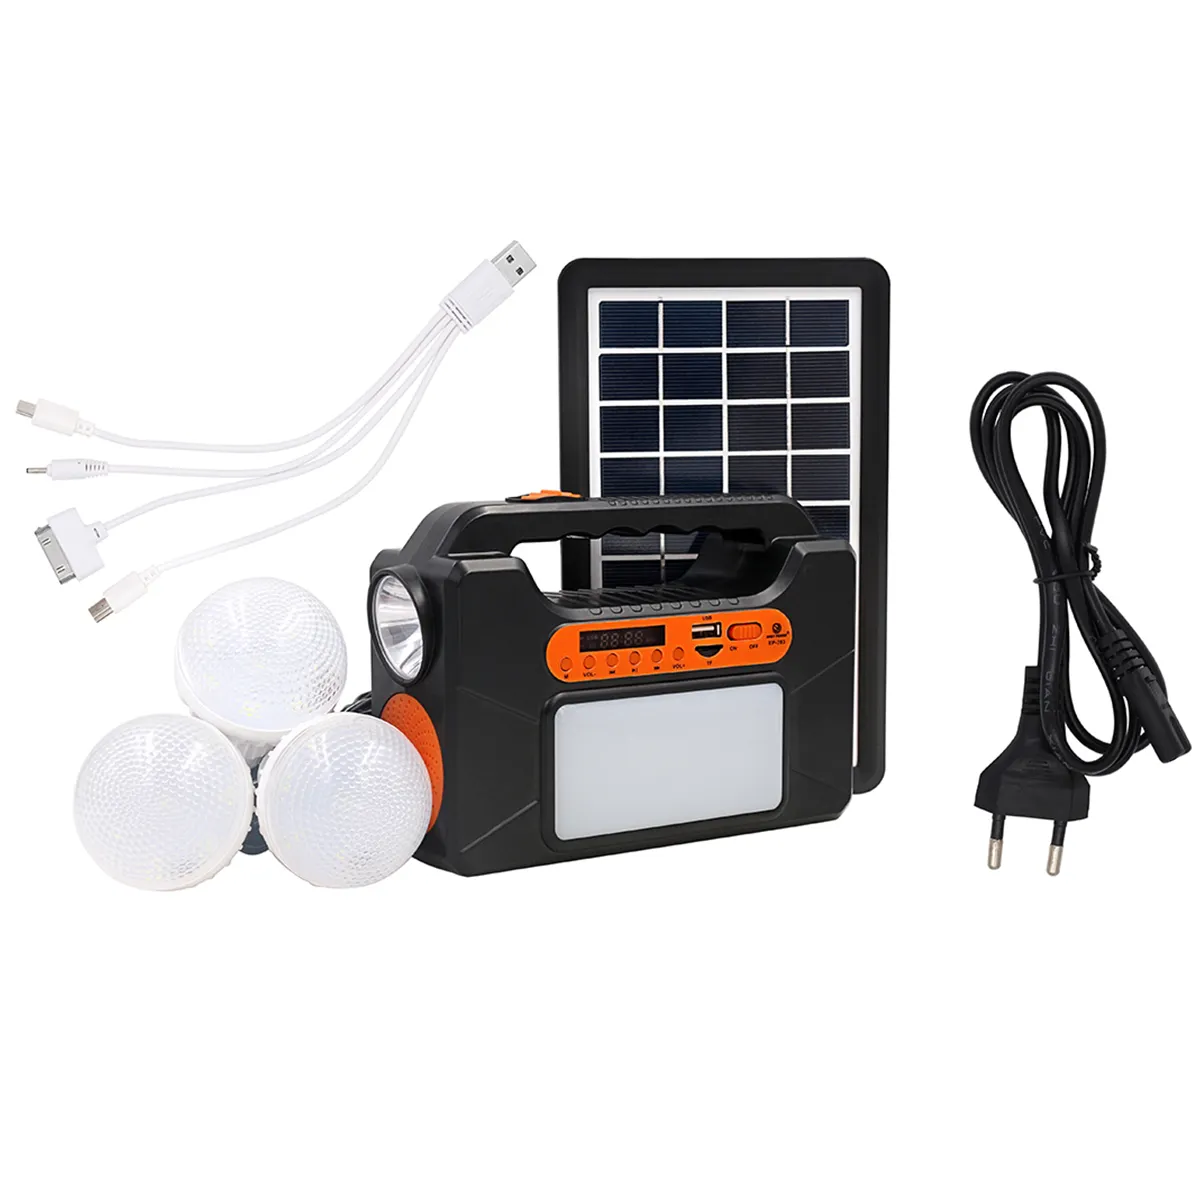 Solar Power Panel Generator Kit Radio+3 LED Bulb Light for Home Outdoor Emergency Lighting